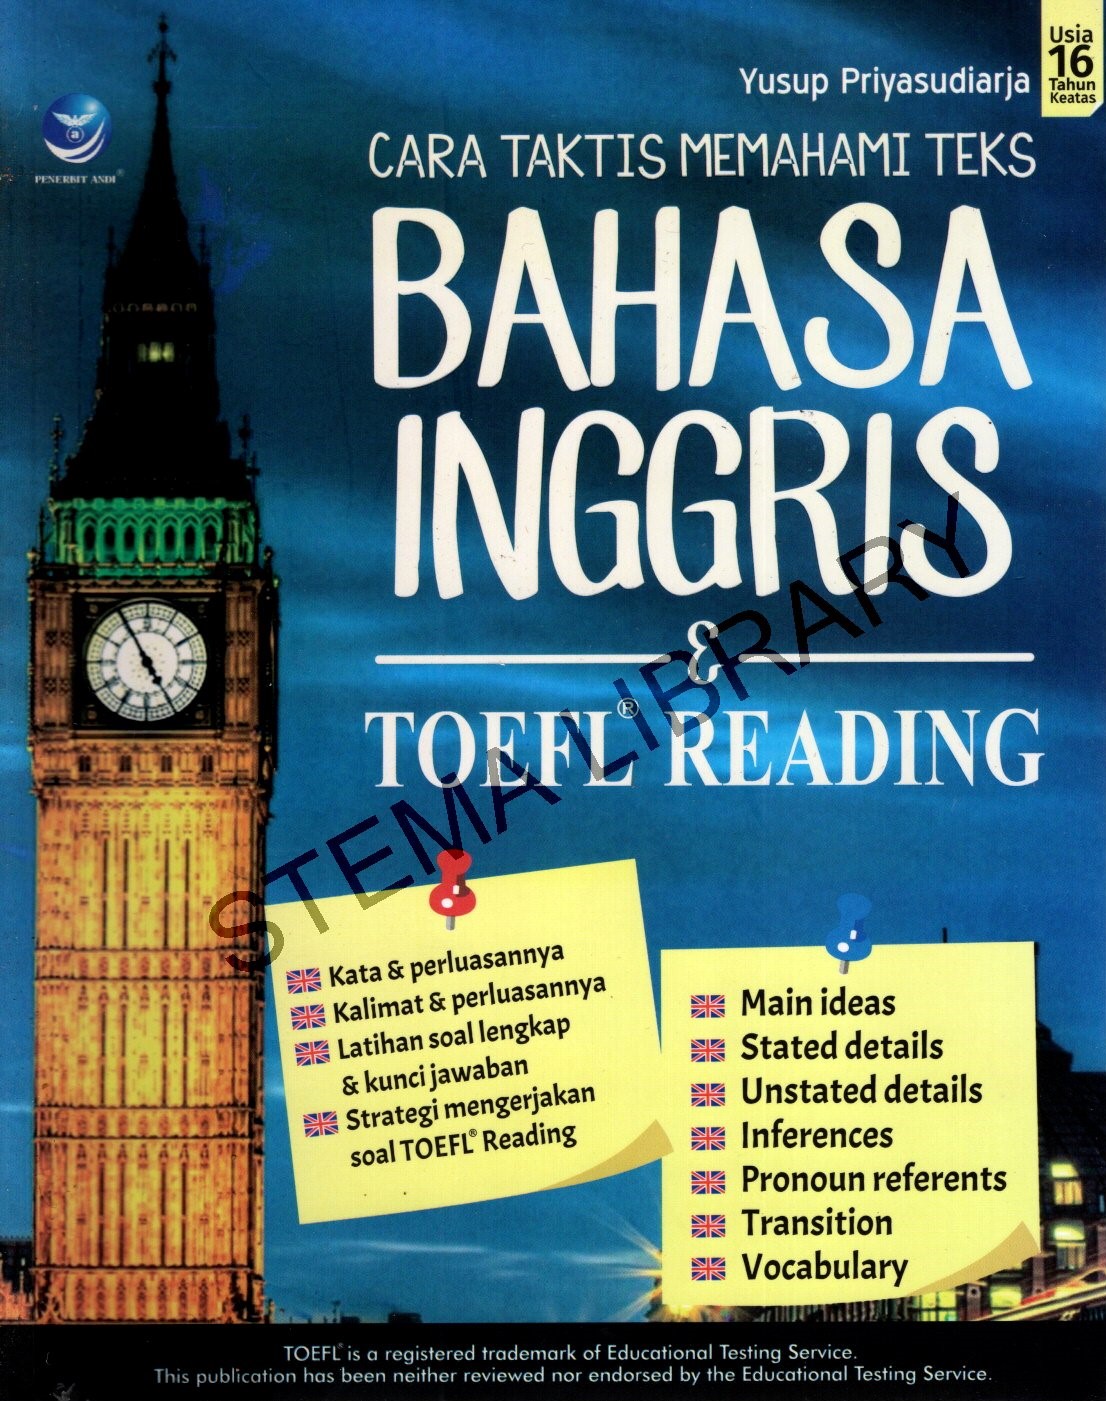 Cara Taktis Memahami Teks Bahasa Inggris & TOEFL Reading